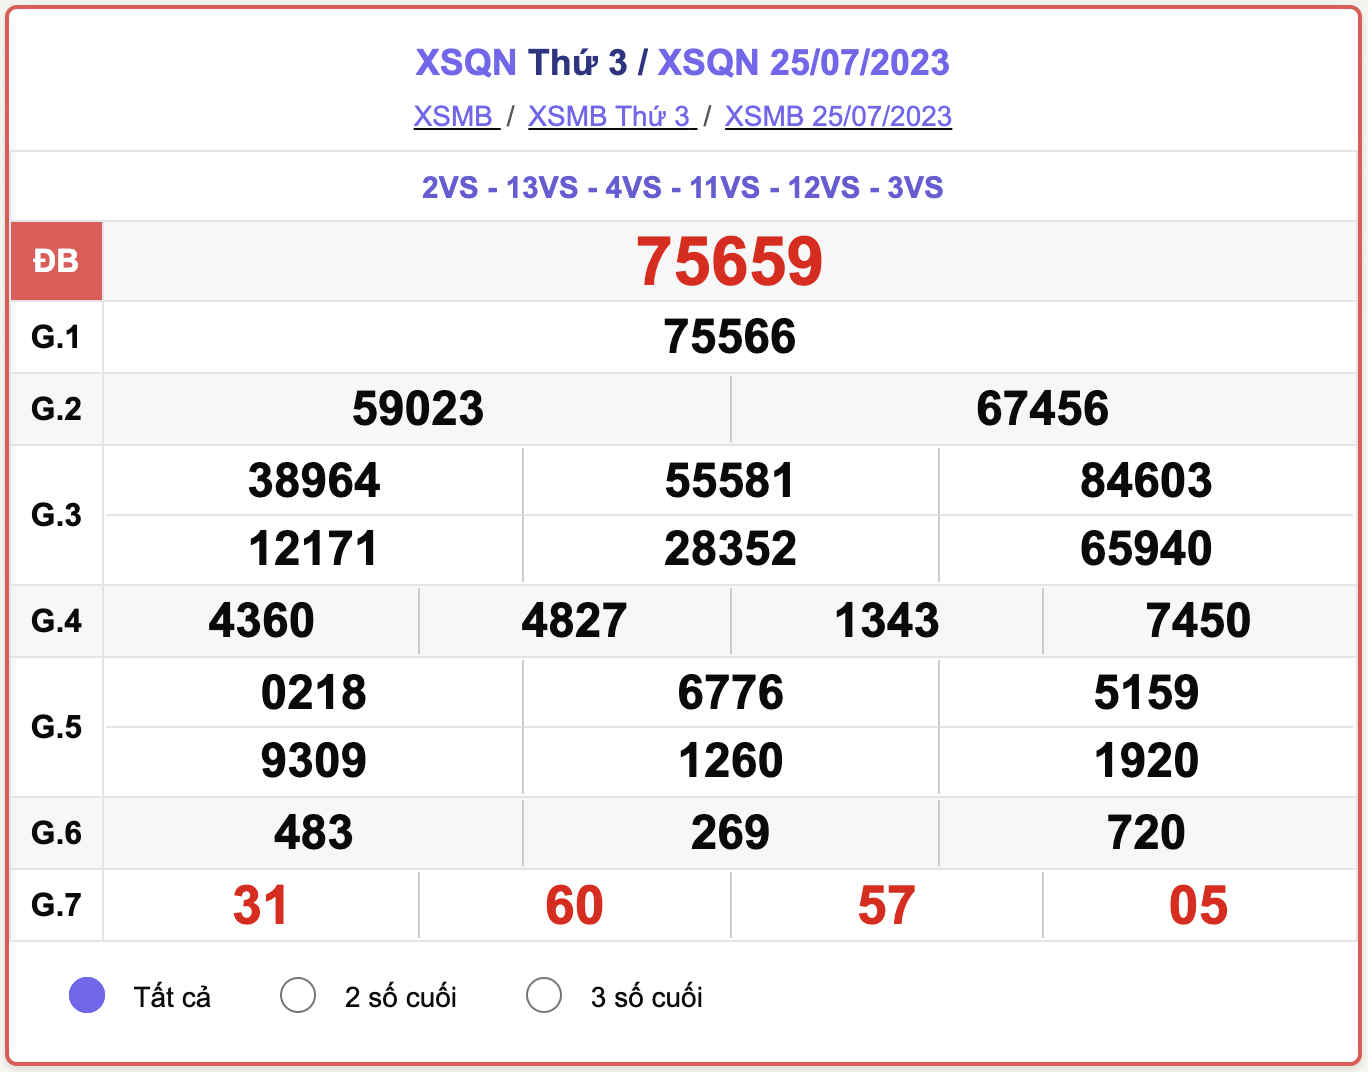 XSMB thứ 3, kết quả xổ số Quảng Ninh ngày 25/7/2023